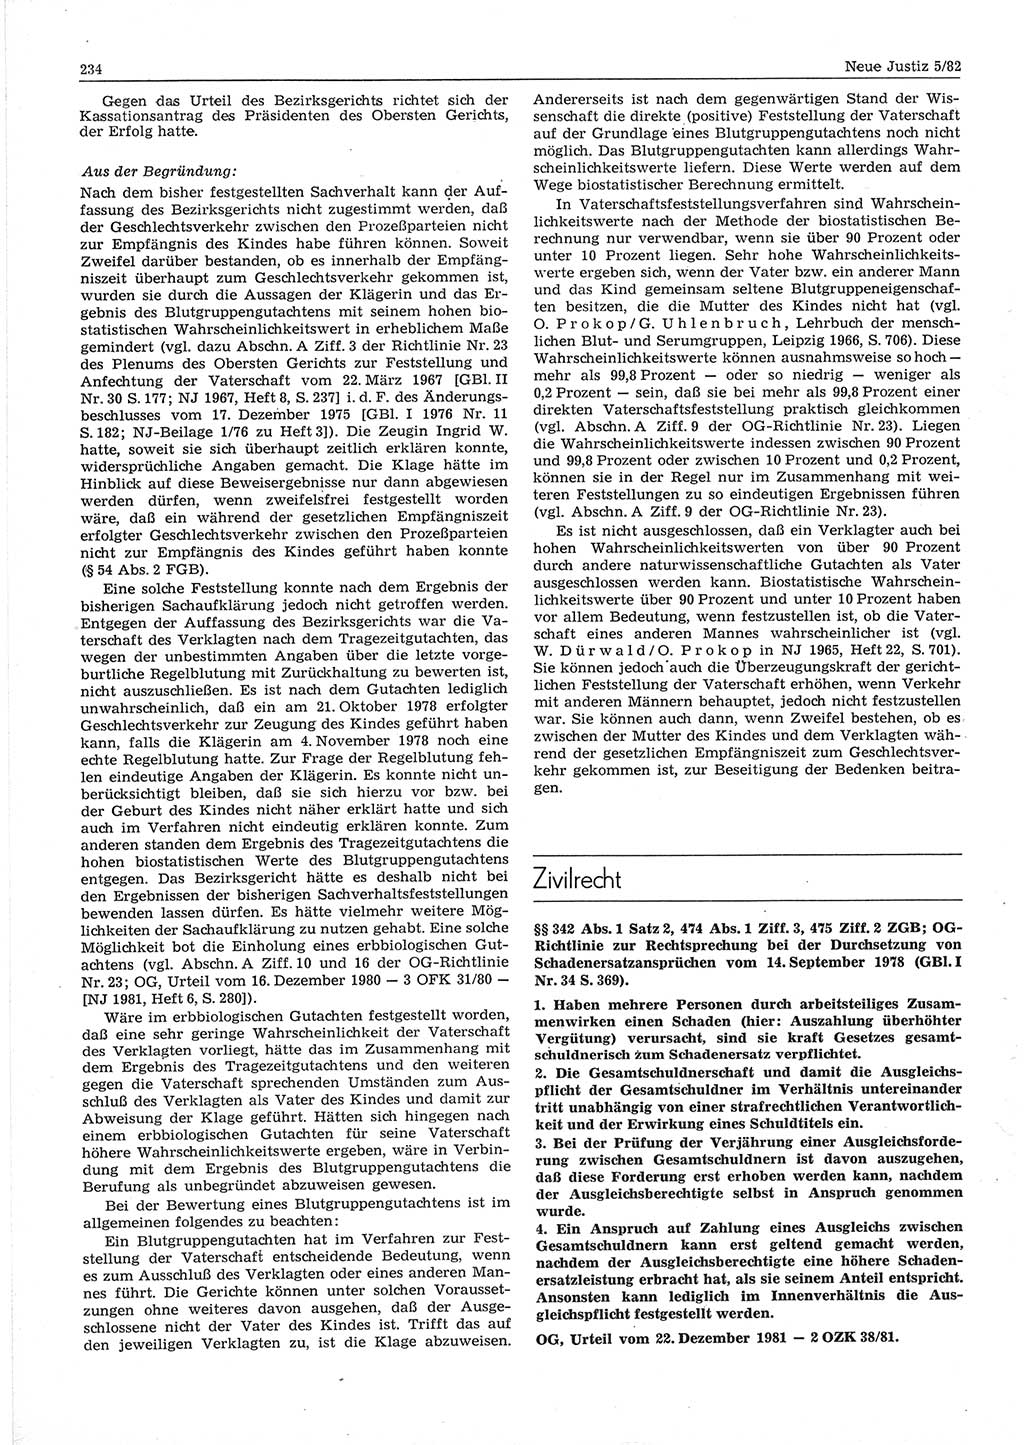 Neue Justiz (NJ), Zeitschrift für sozialistisches Recht und Gesetzlichkeit [Deutsche Demokratische Republik (DDR)], 36. Jahrgang 1982, Seite 234 (NJ DDR 1982, S. 234)